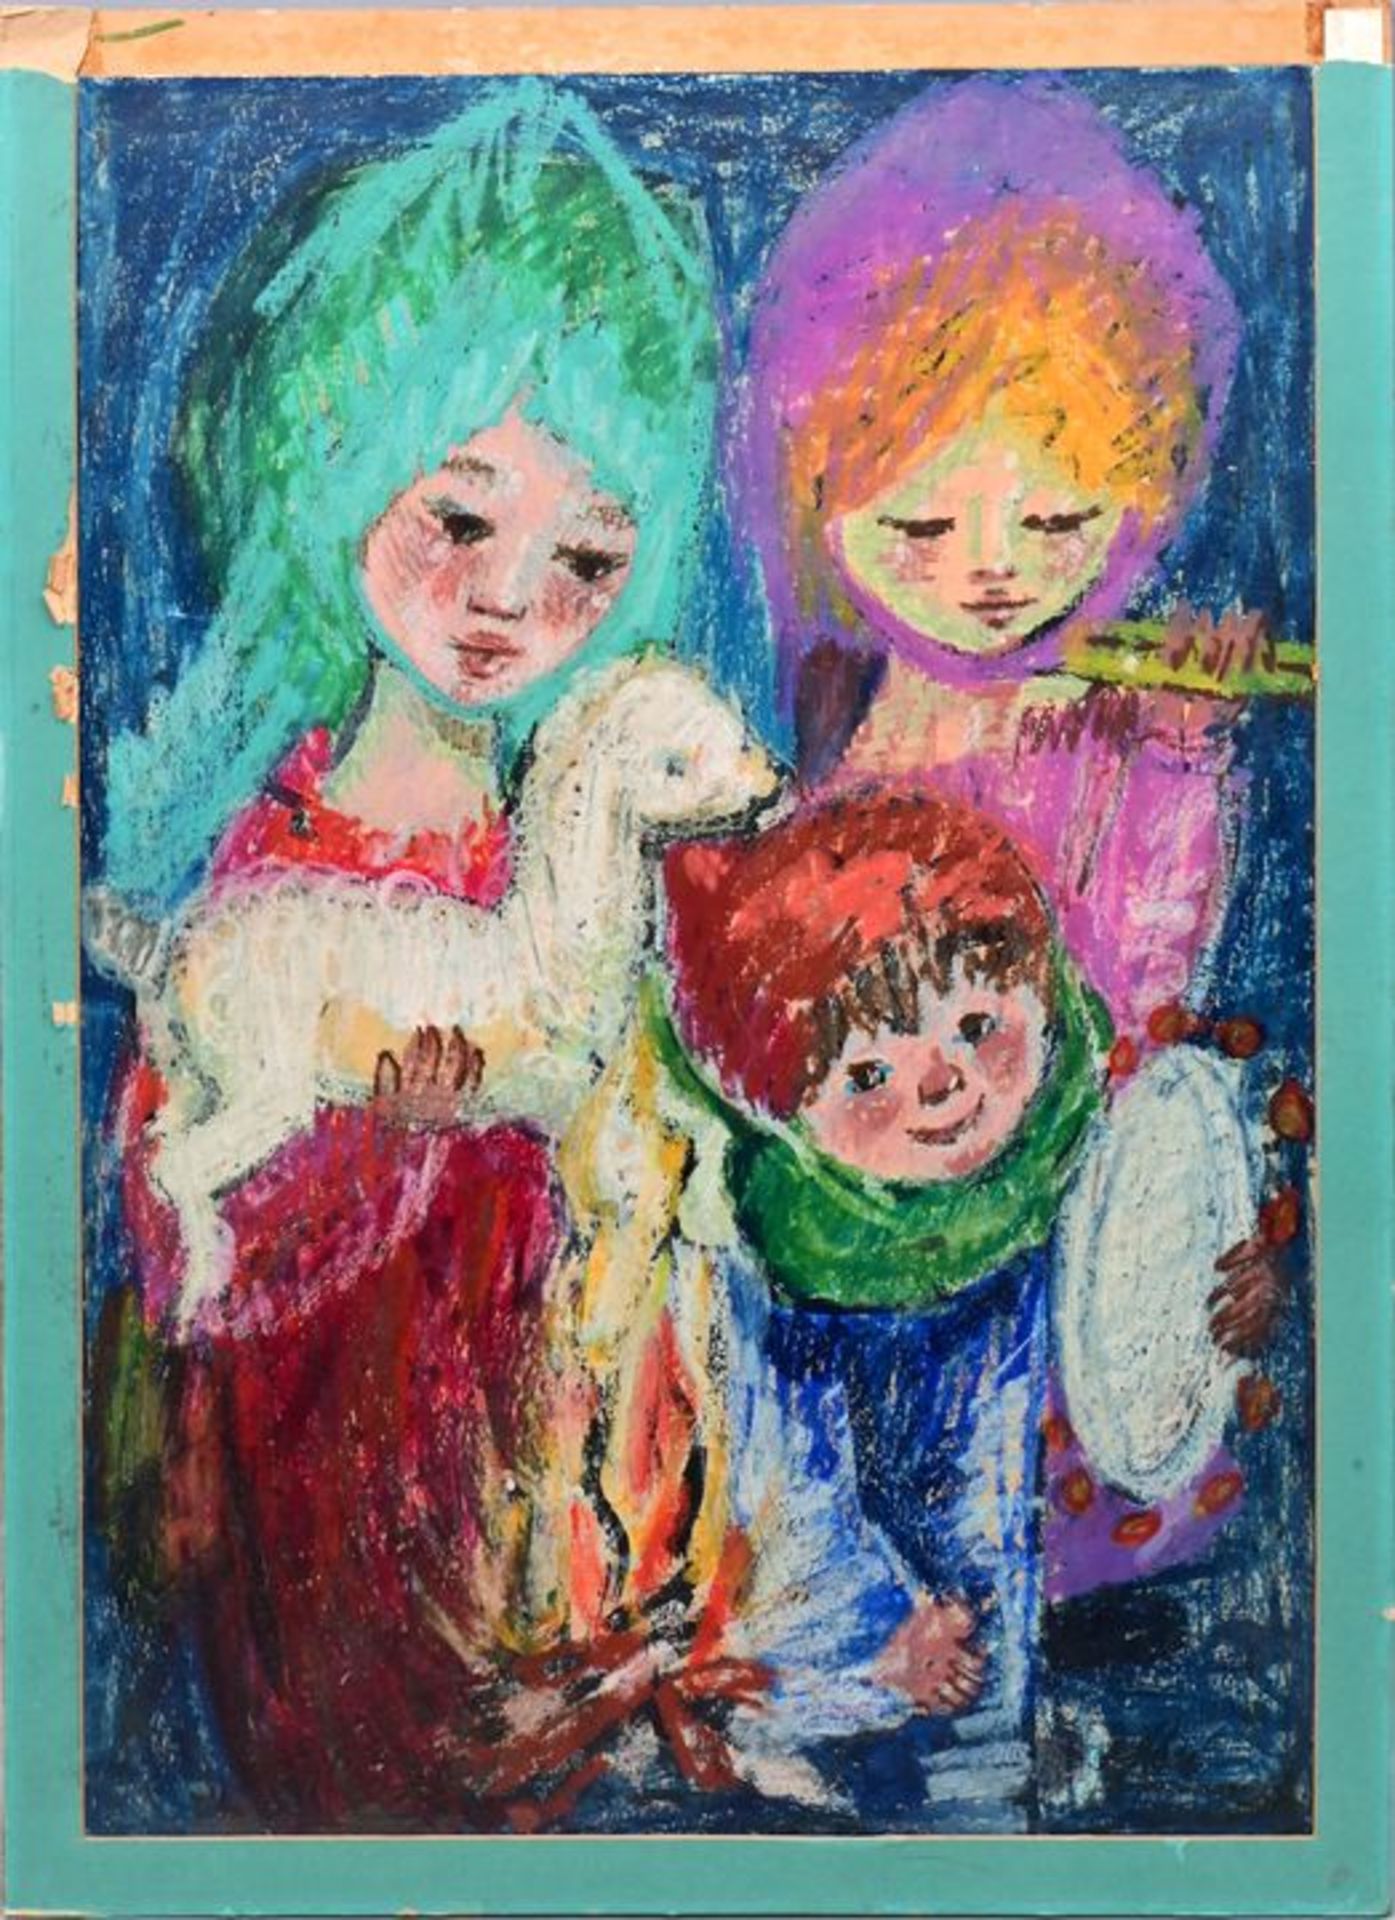 Unbekannt, ca. 1970, Fettkreidezeichnung / Grease crayon, Mother with children